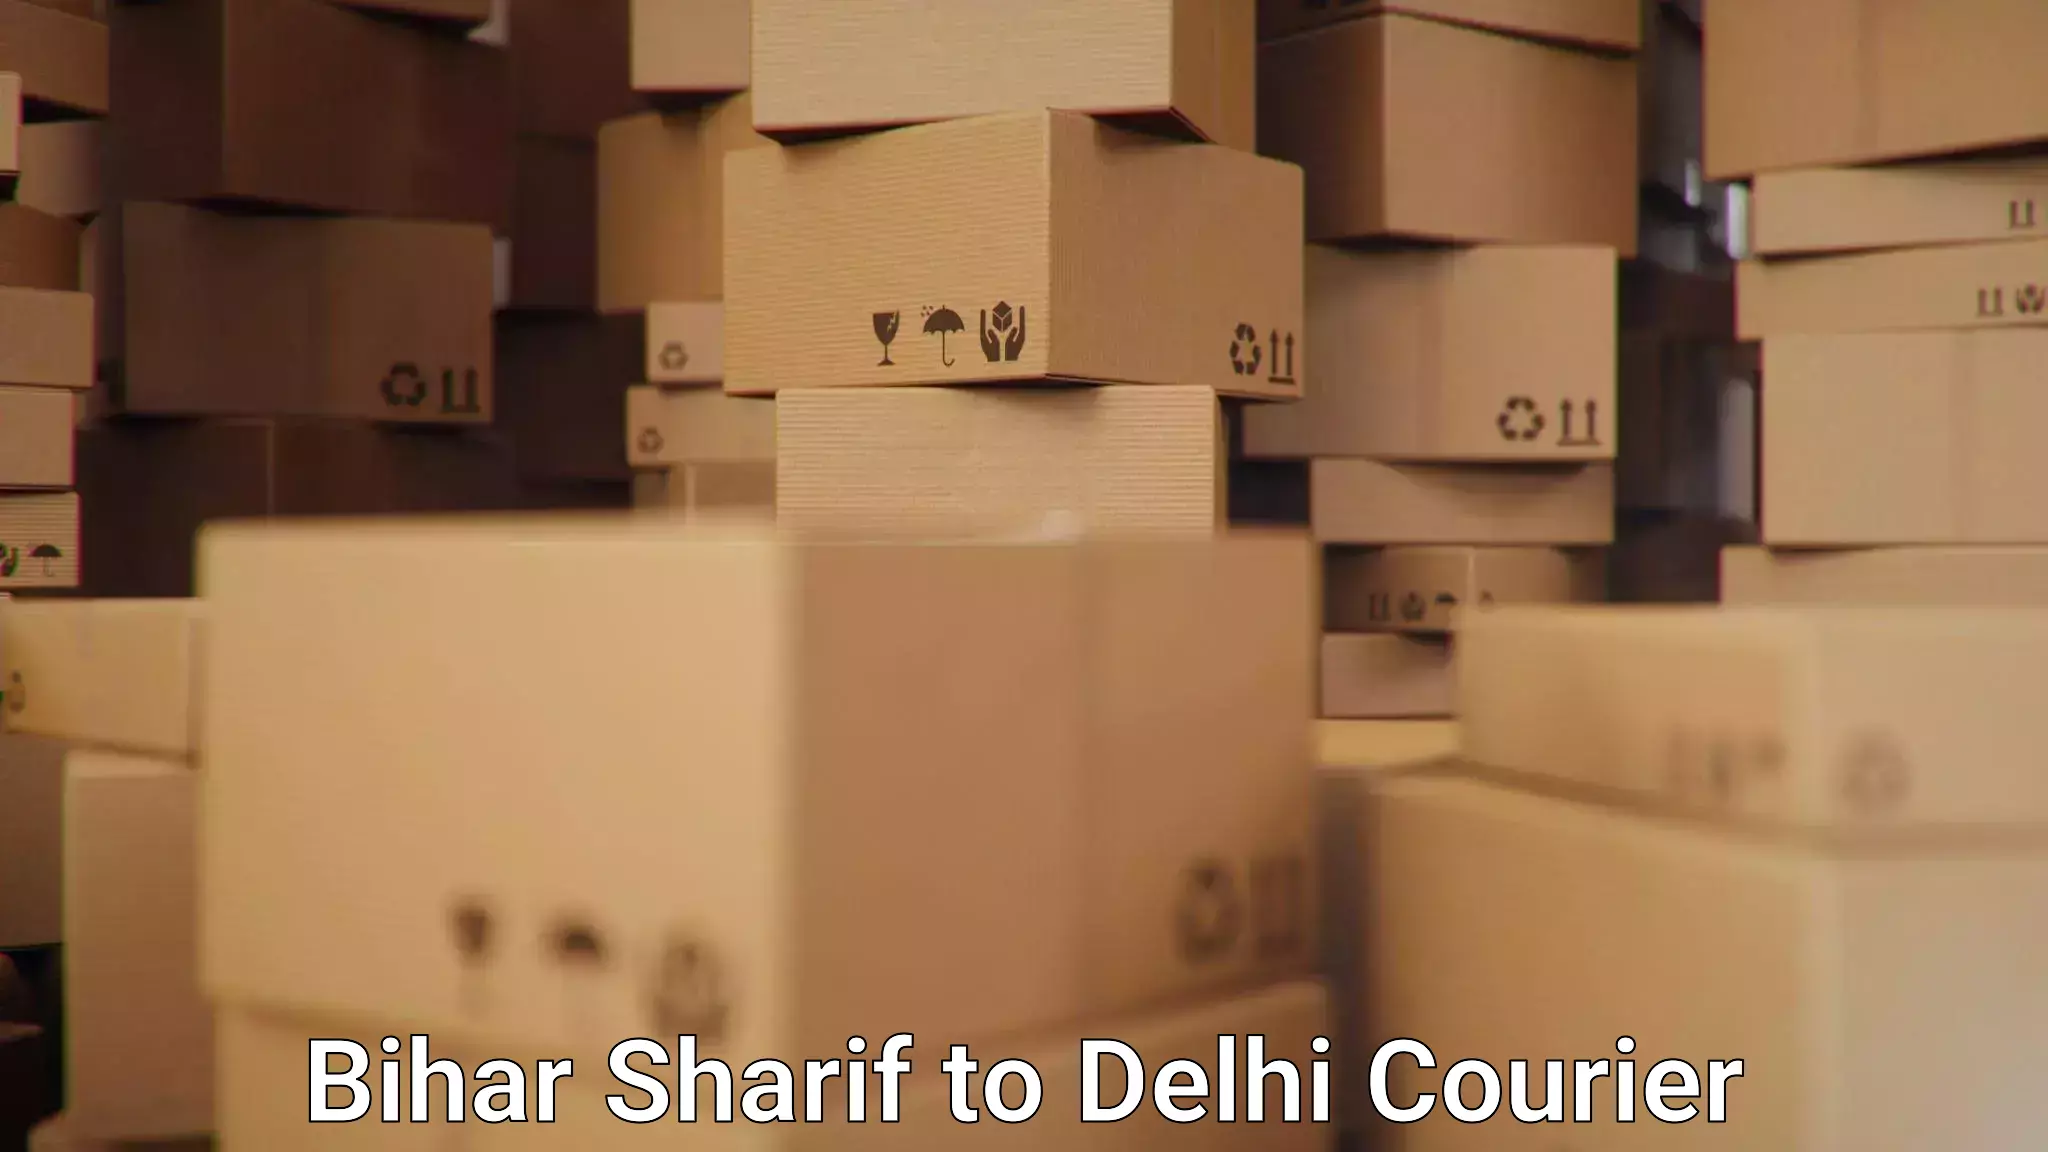 Custom courier packaging in Bihar Sharif to IIT Delhi